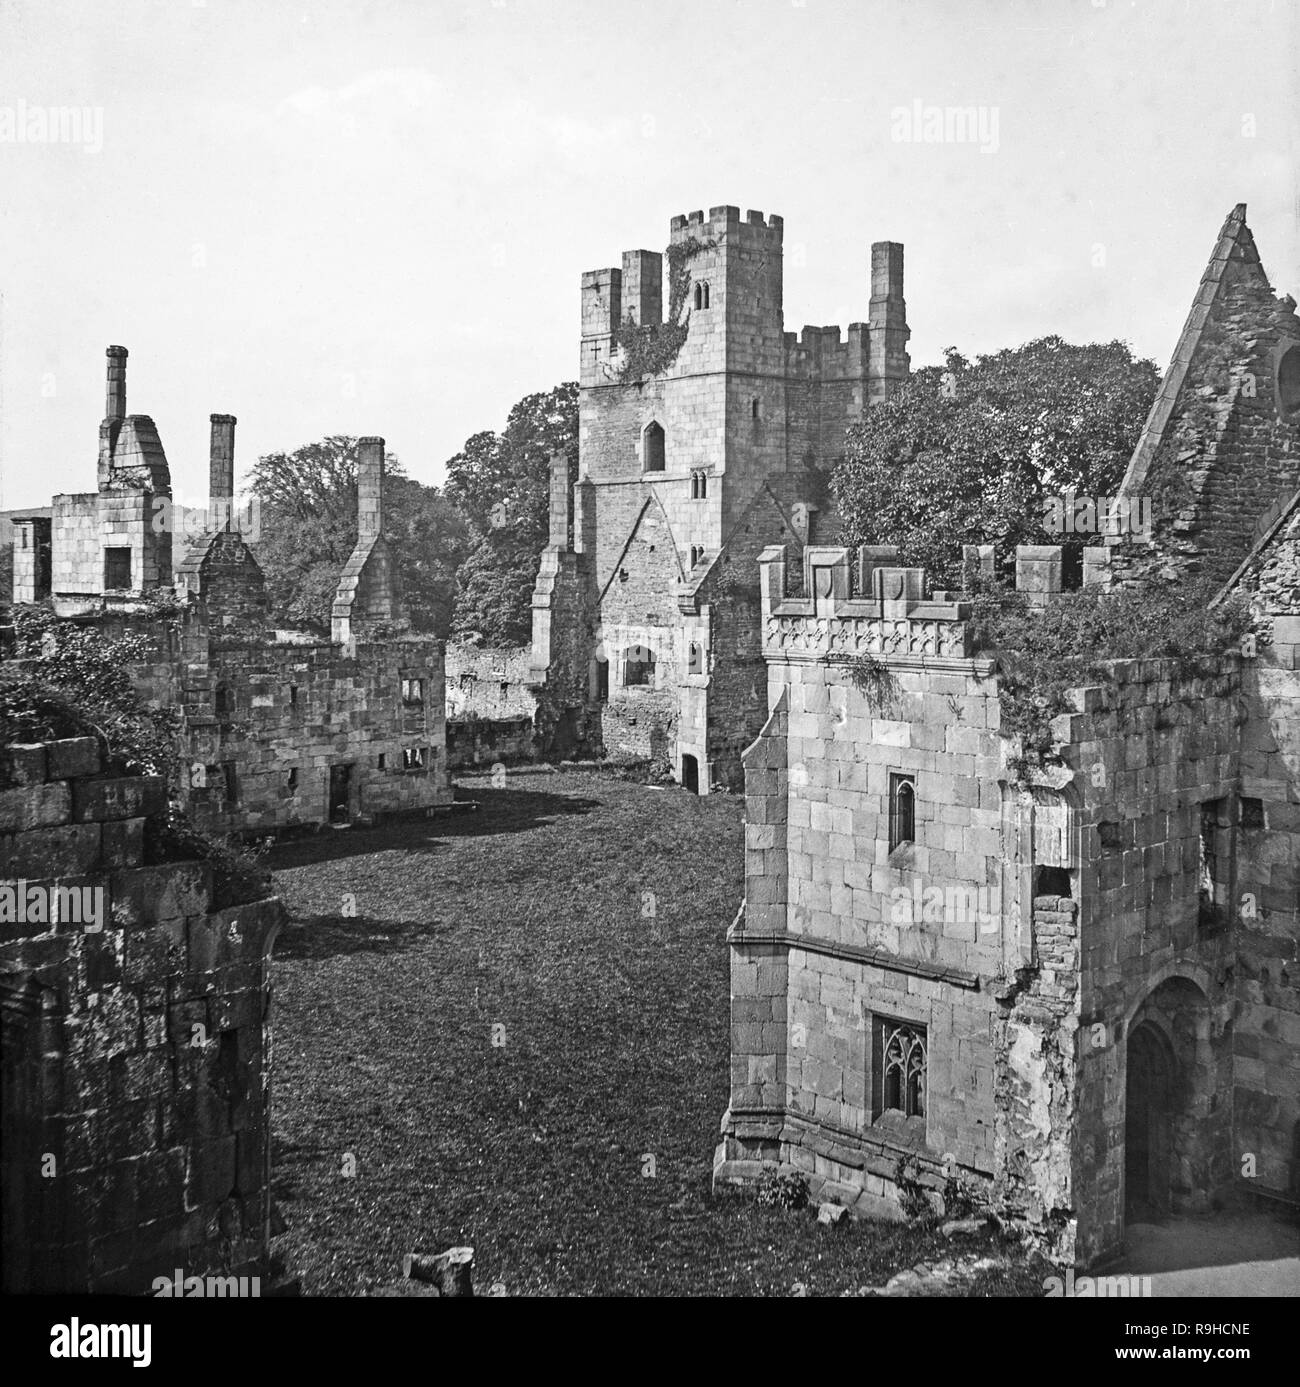 Ein spät-viktorianischen schwarz-weiß Foto, die Ruinen von Winfield Manor, in der Nähe von Worksop in Derbyshire, England. Dieses Denkmal spätmittelalterlicher "auffälligen Konsum" wurde in den 1440s für die wohlhabenden Ralph, Herr Cromwell, Schatzmeister von England gebaut. Später wurde das Haus von Bess von Hardwick Ehemann, der Earl of Shrewsbury, der die schottische Königin Mary hier in 1569, 1584 und 1585 inhaftiert. Stockfoto